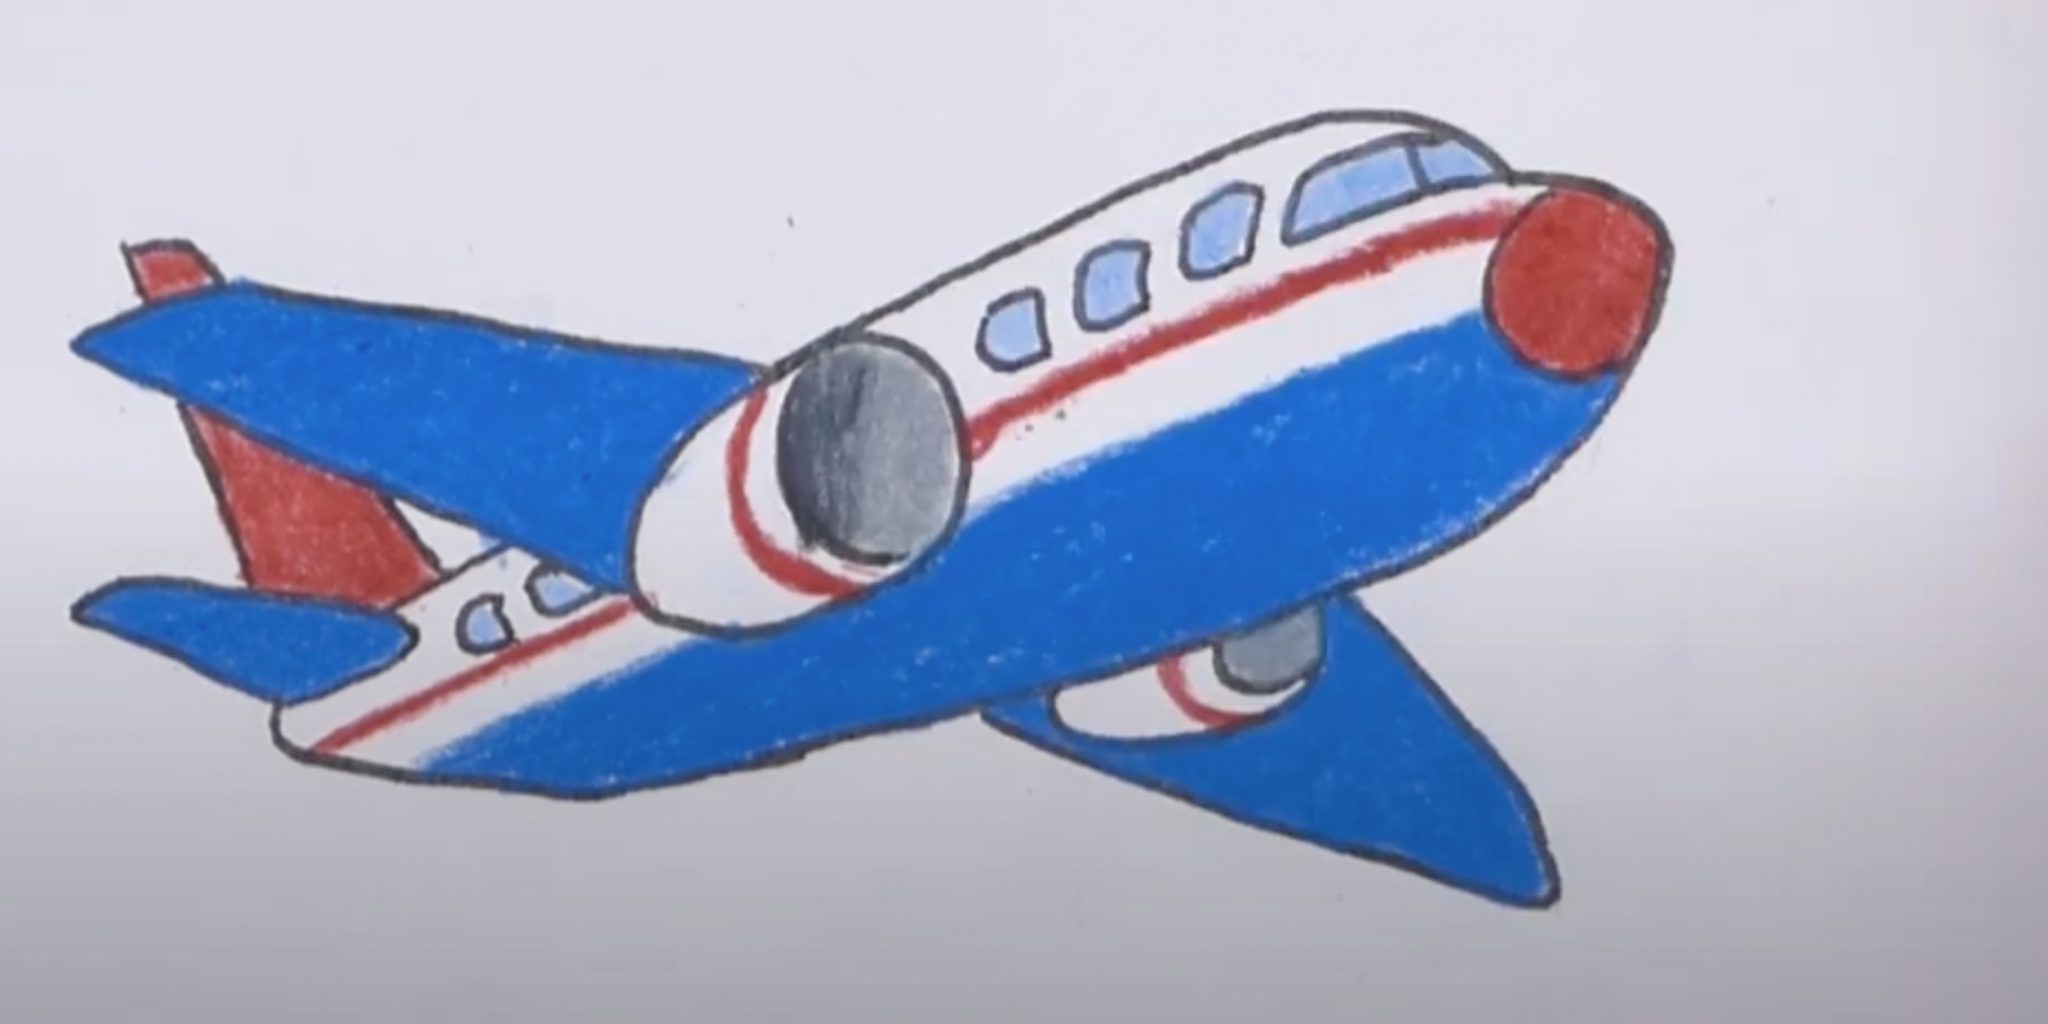 Как нарисовать самолет легко и красиво